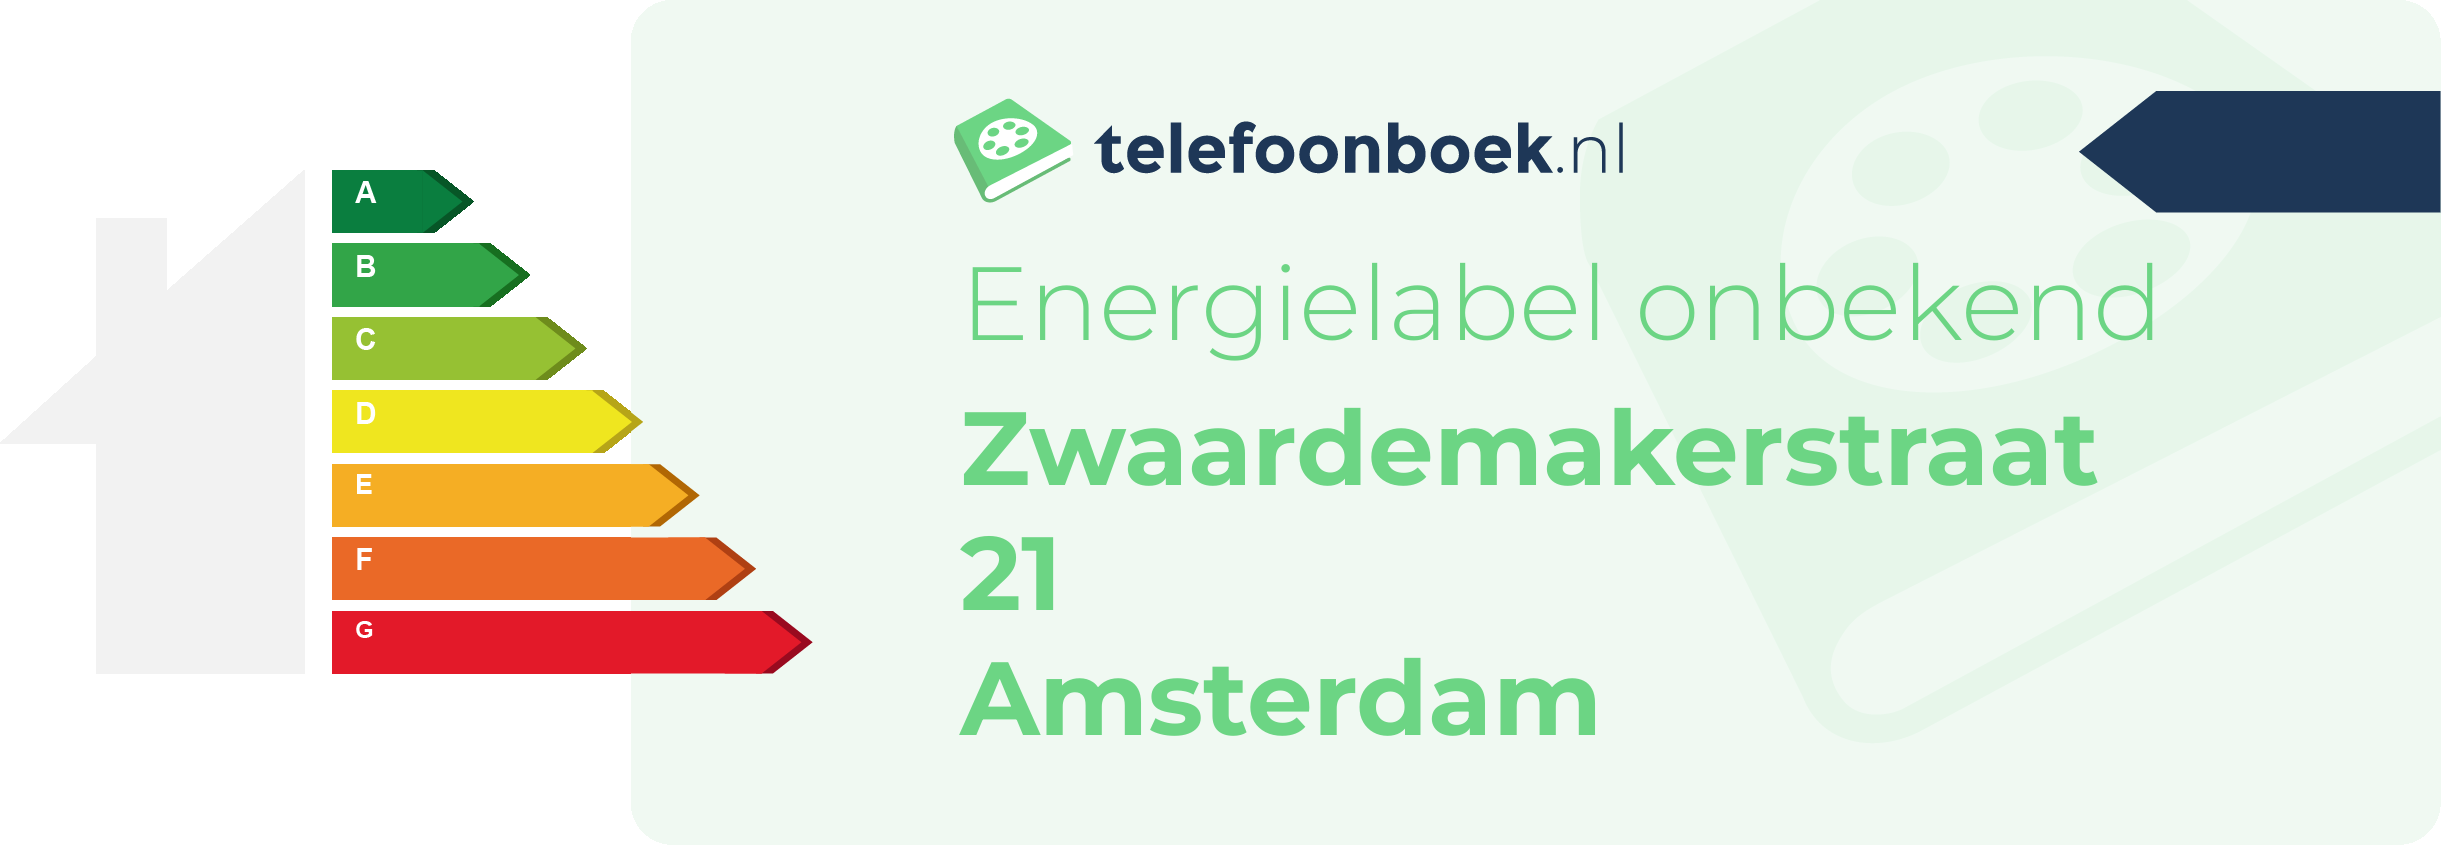 Energielabel Zwaardemakerstraat 21 Amsterdam